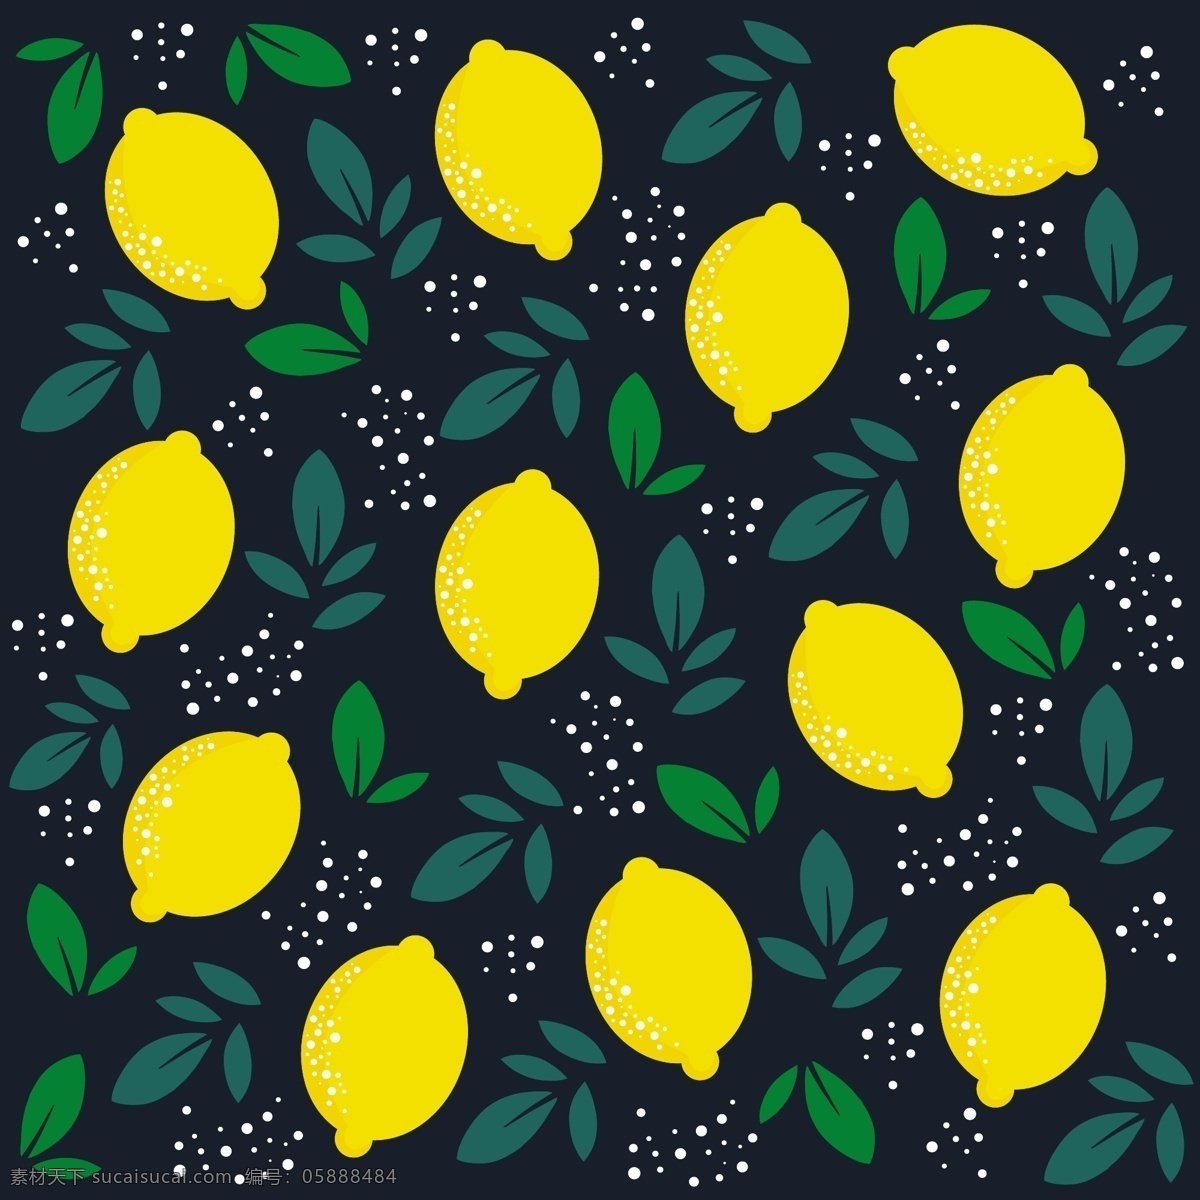 柠檬 树叶 矢量 叶子 矢量素材 水果